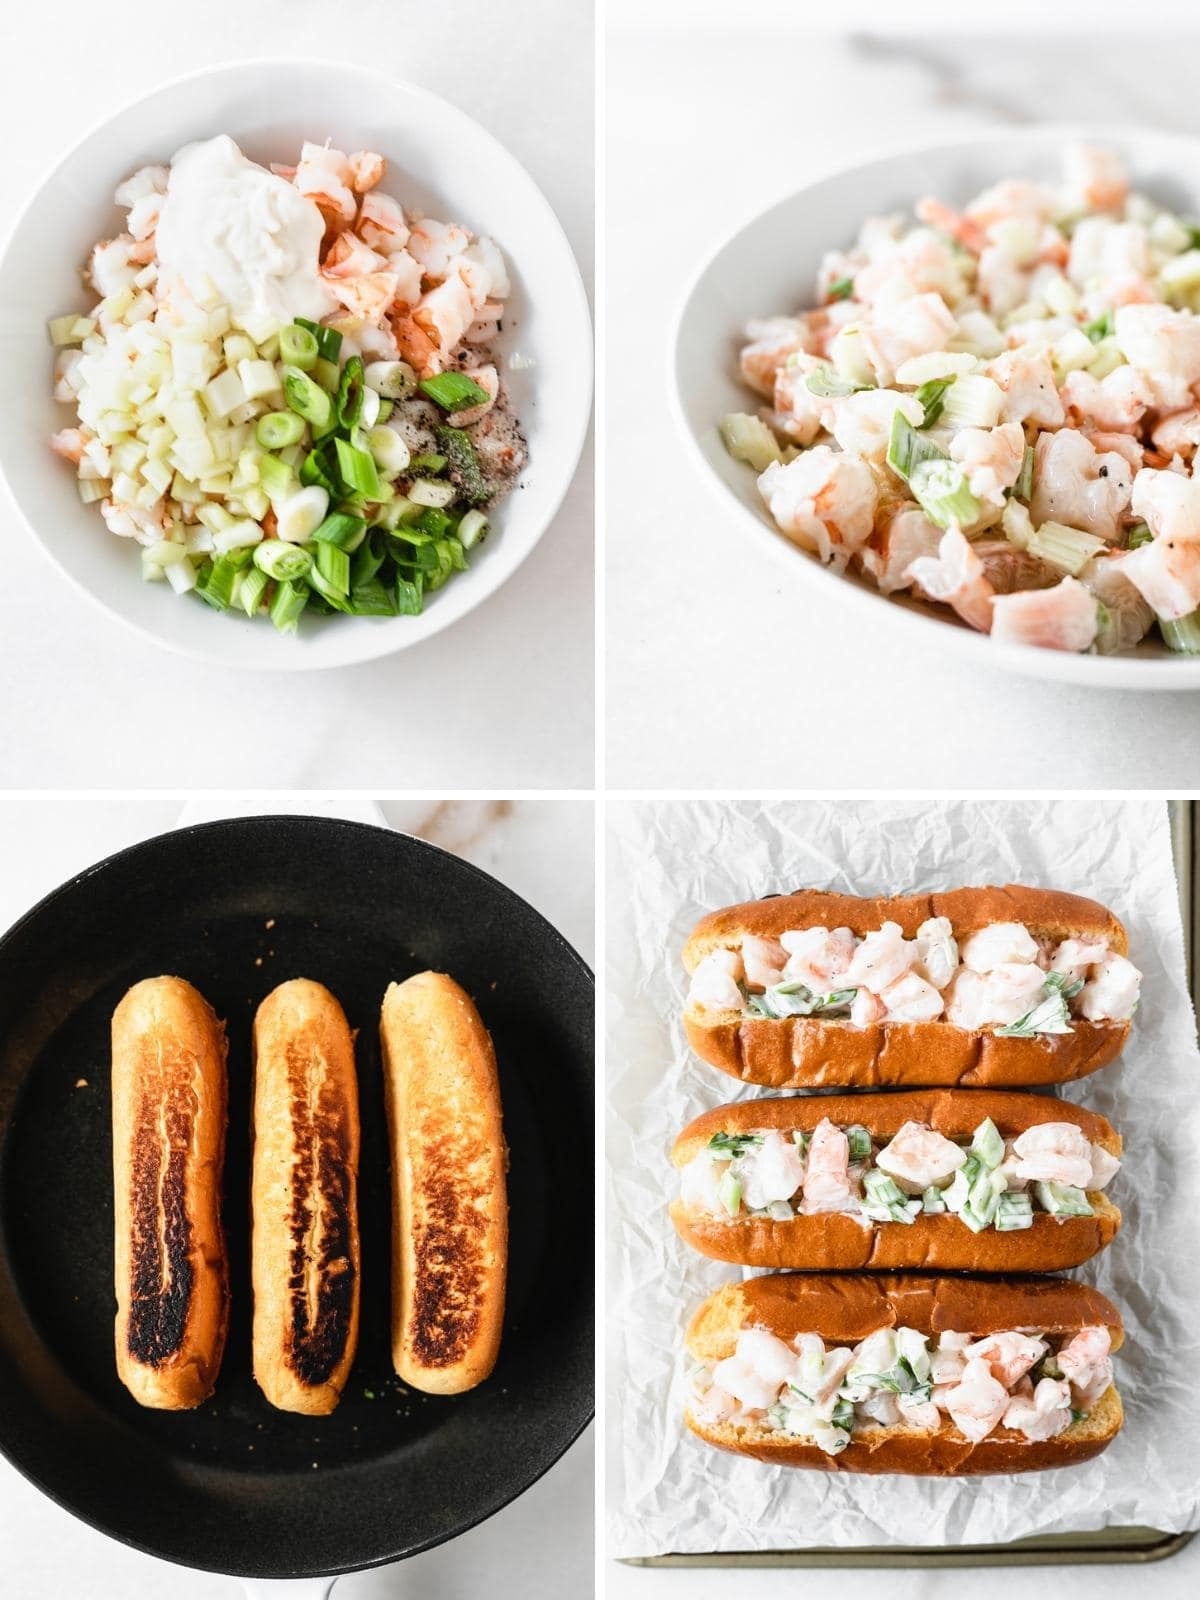 four image collage showing steps for making shrimp salad and new england shrimp rolls.